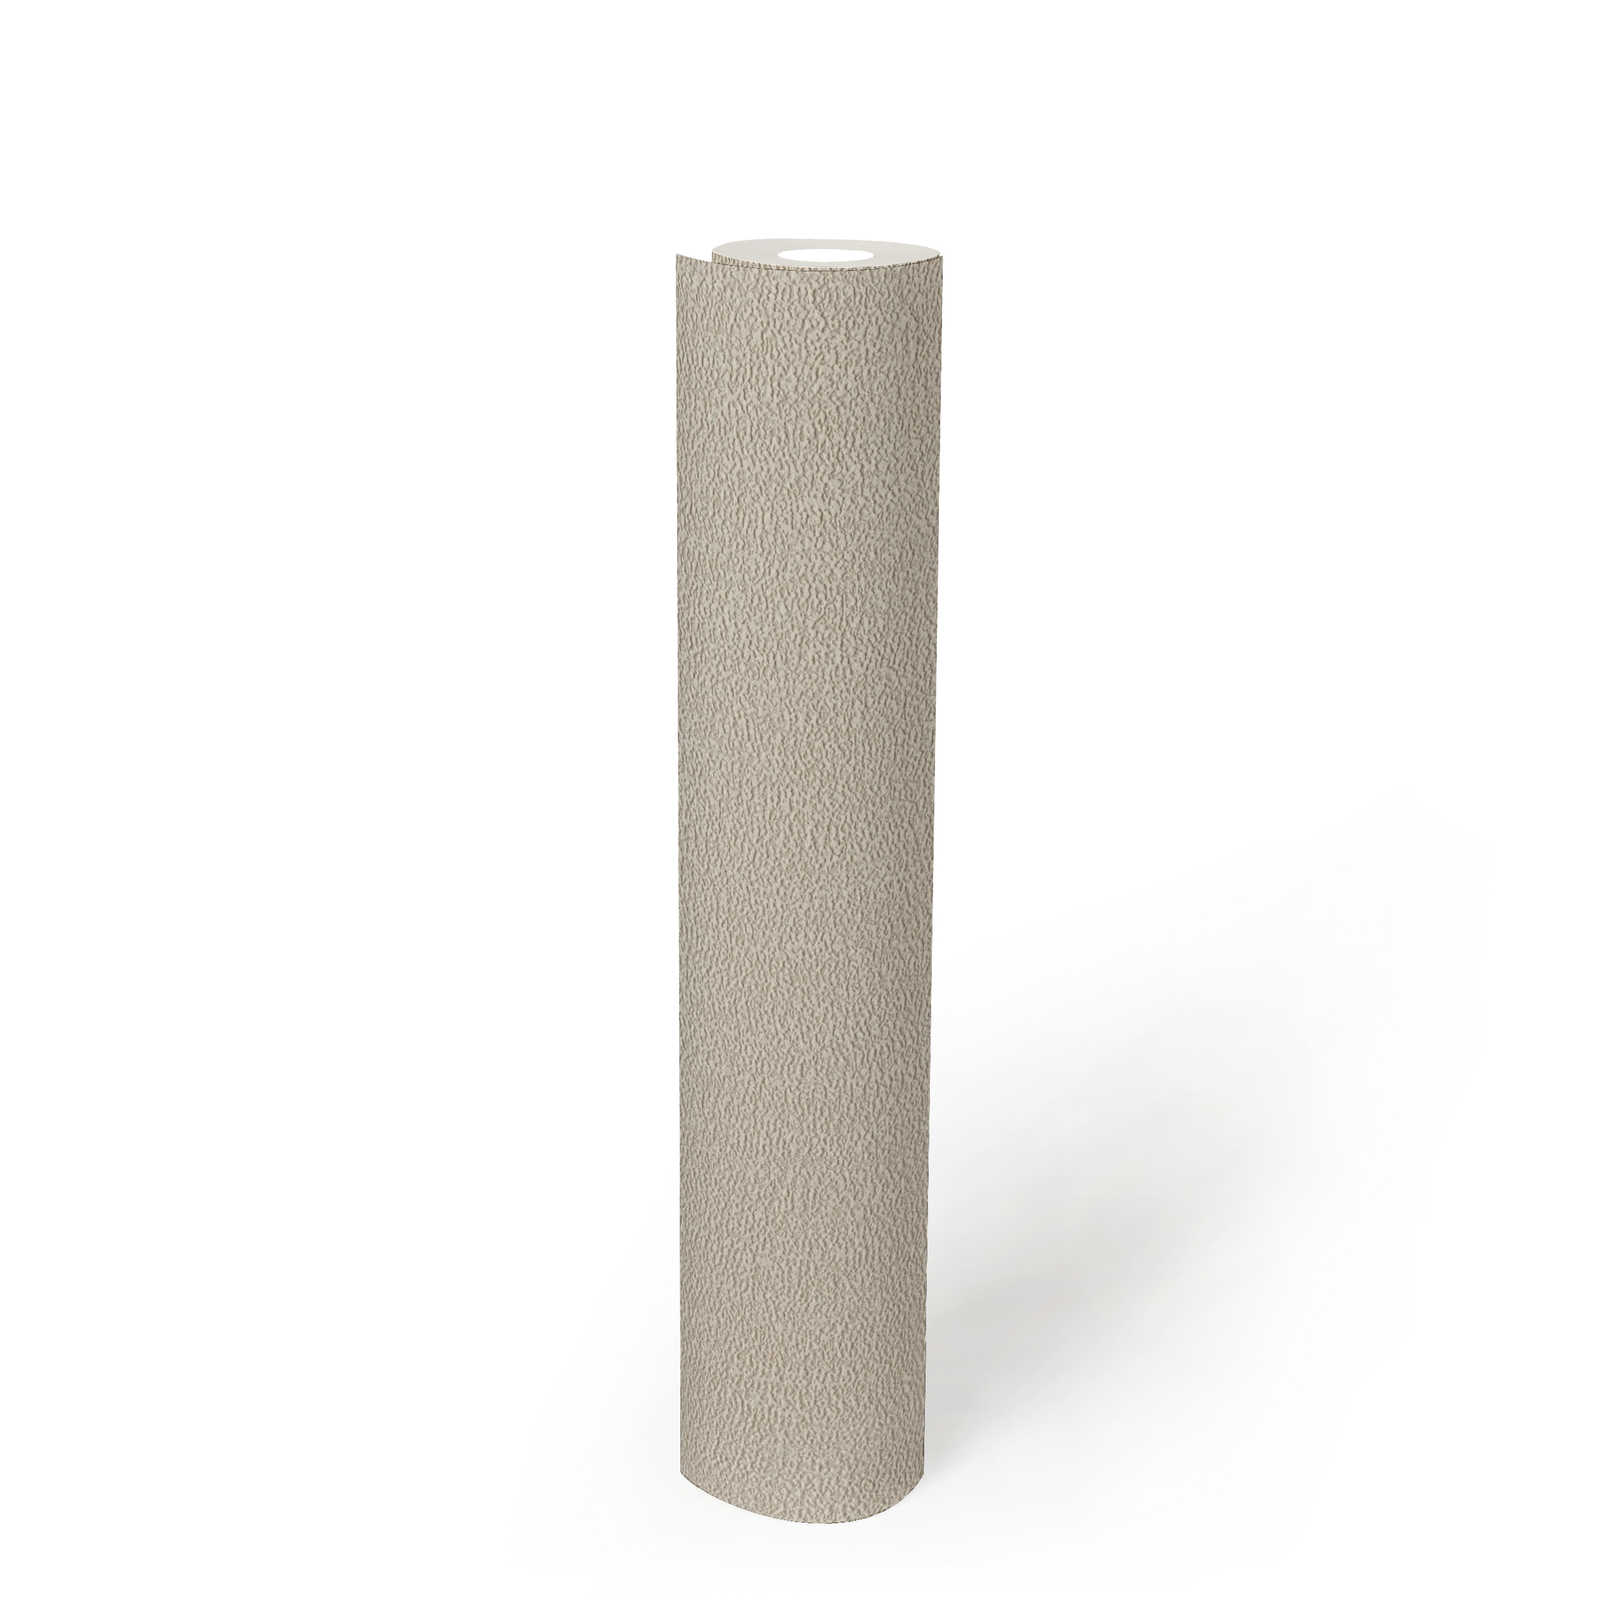             Uni Tapete mit Struktur mit leichtem Glanz – Beige, Grau, Silber
        